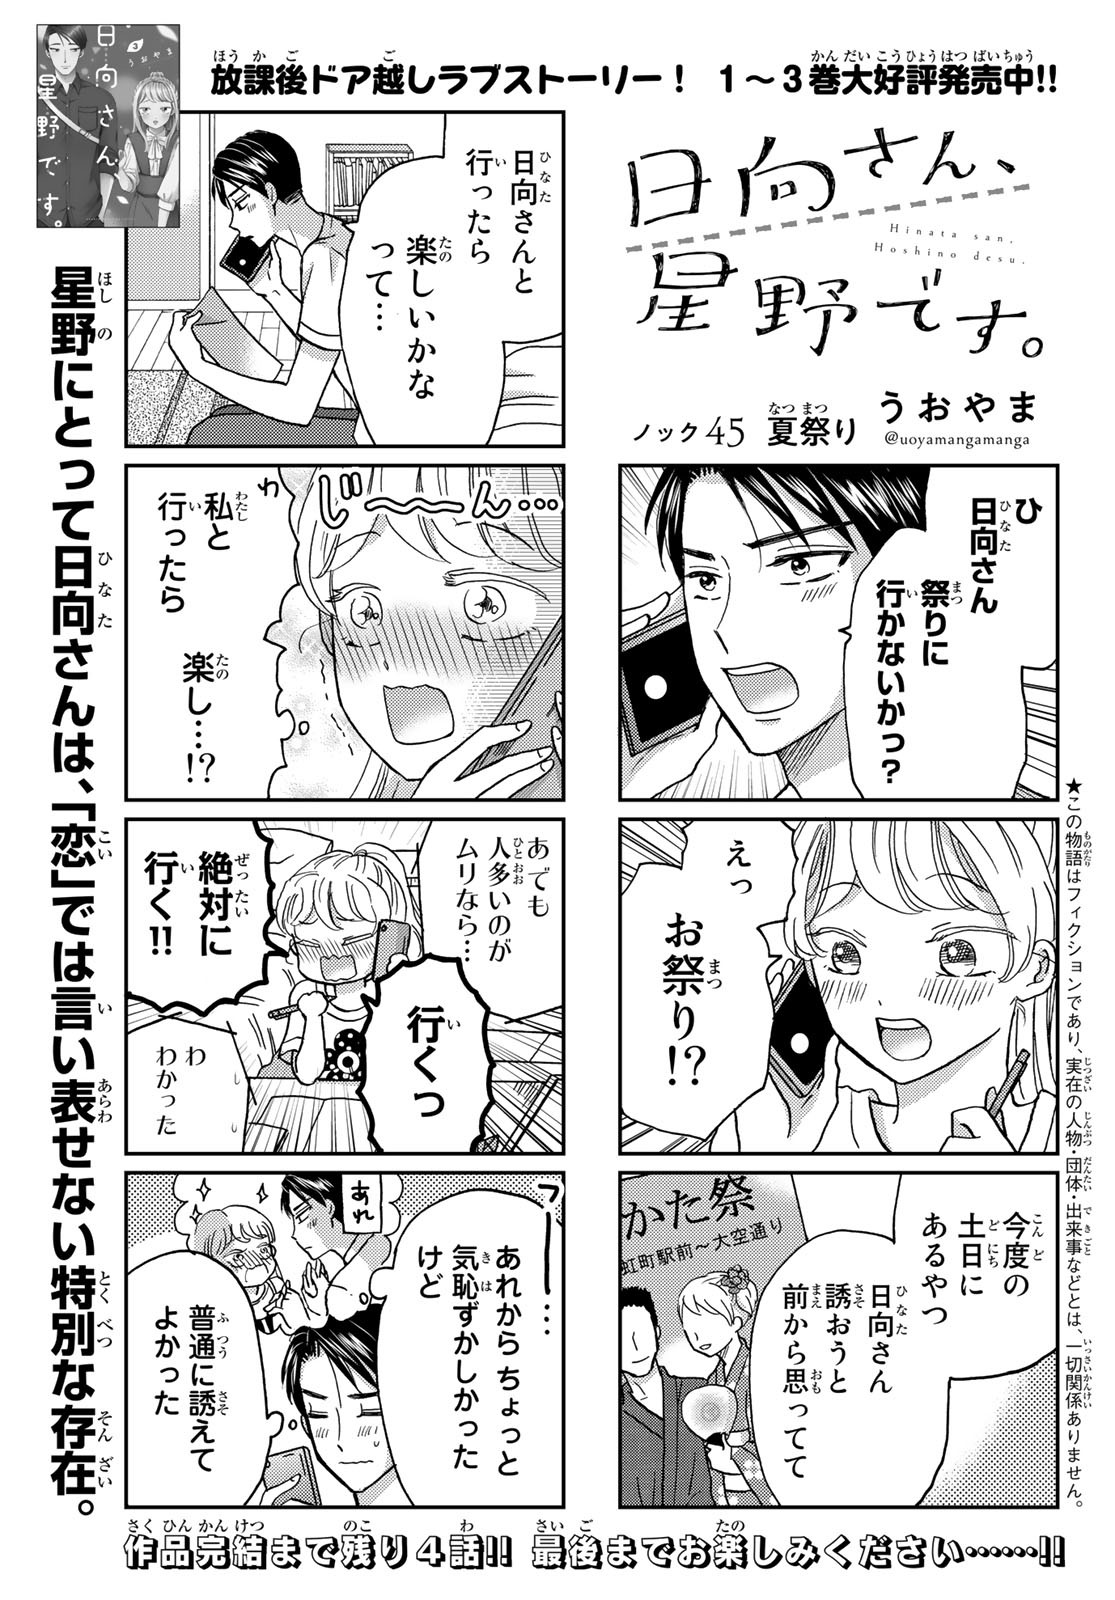 Hinata-san, Hoshino desu. - Chapter 045 - Page 1